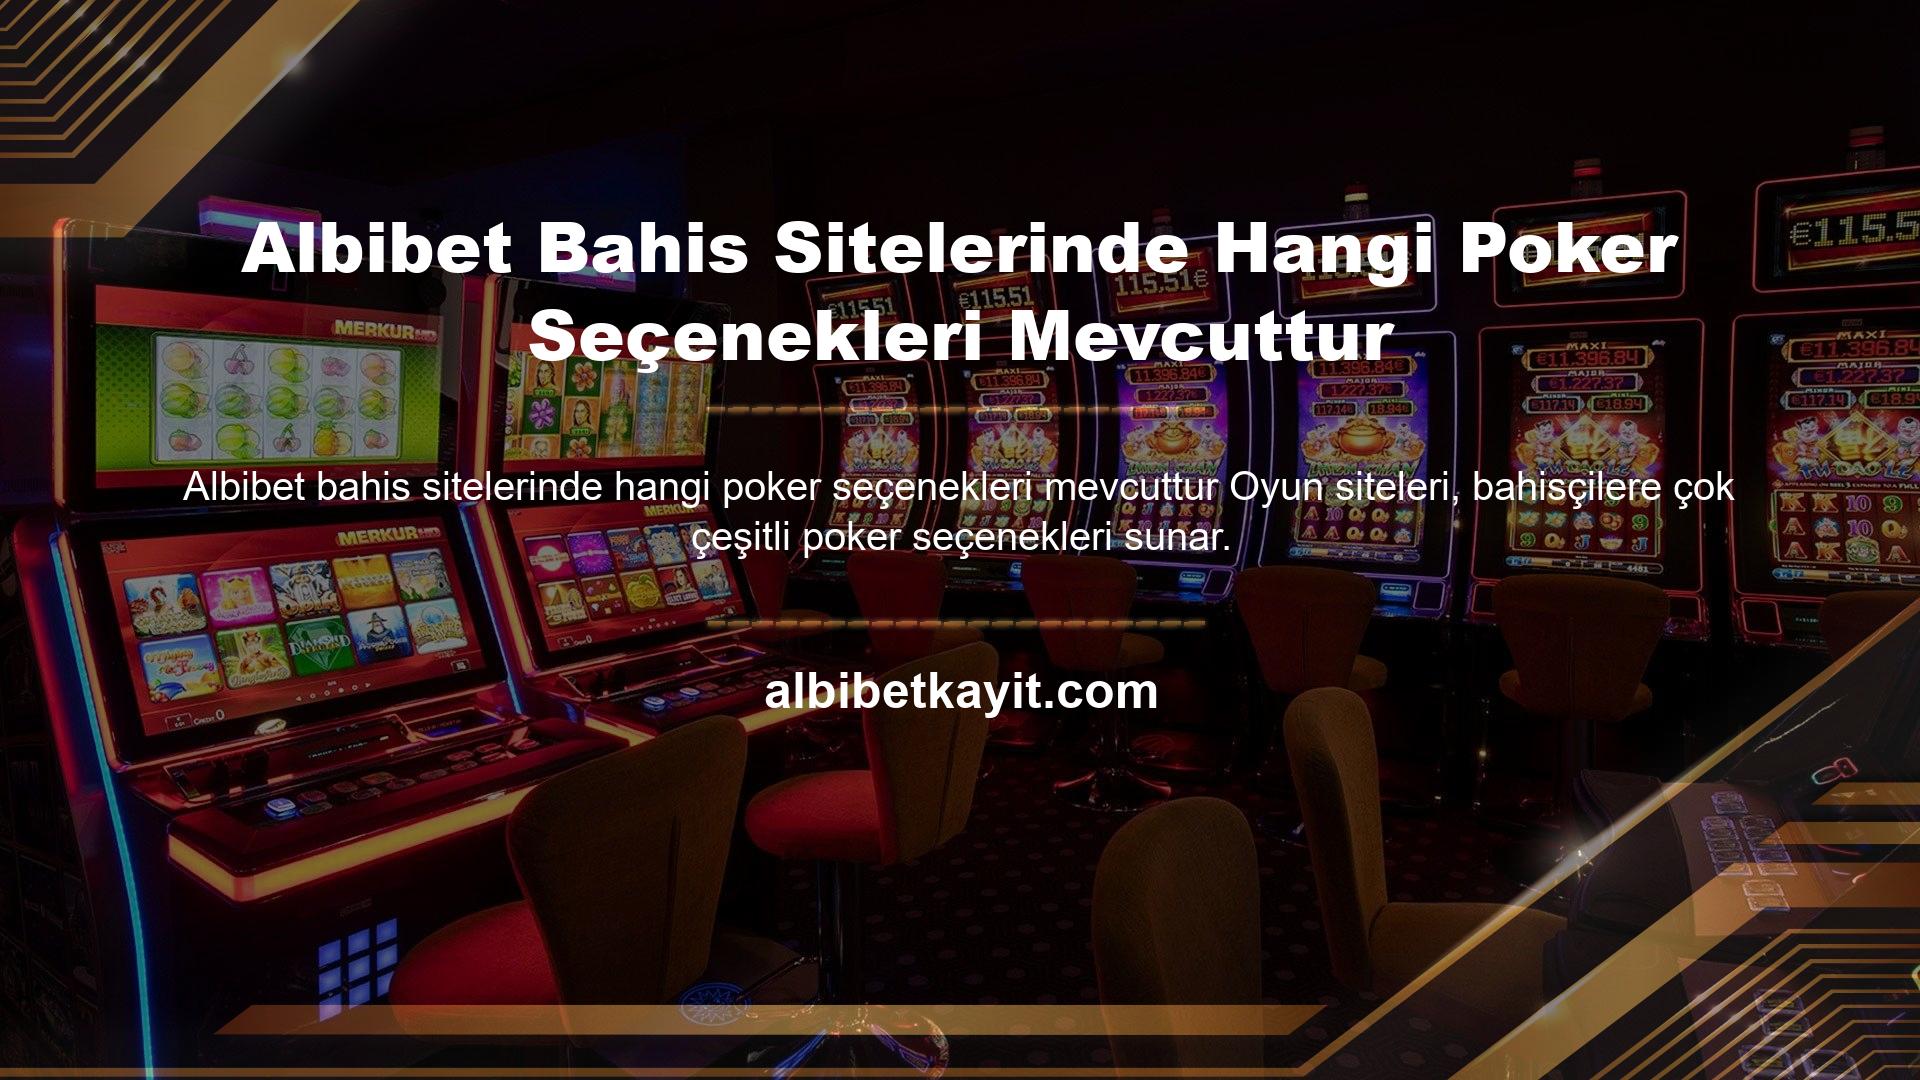 Albibet bahis sitelerinde hangi poker seçenekleri mevcuttur